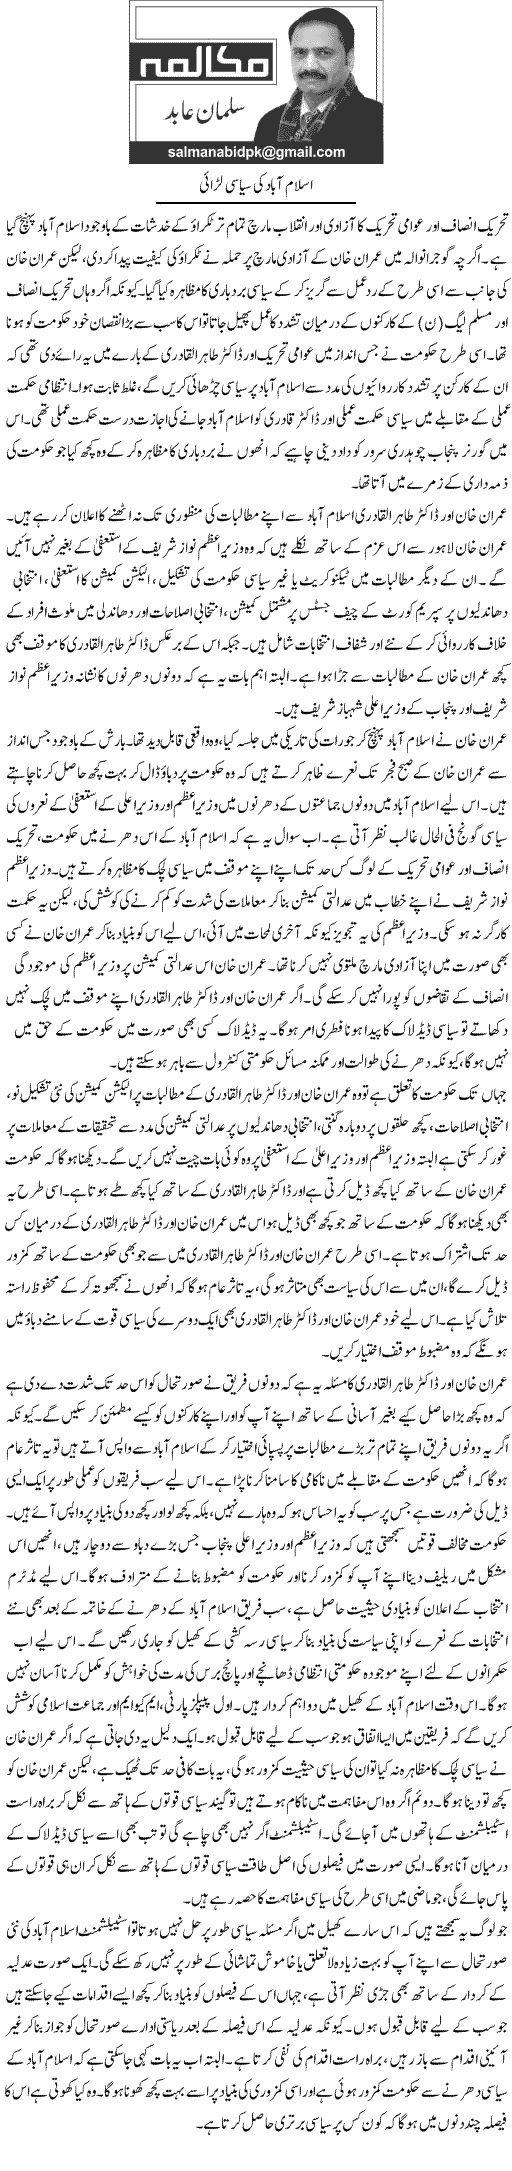 Minhaj-ul-Quran  Print Media Coverage Daily Express Salman Abid